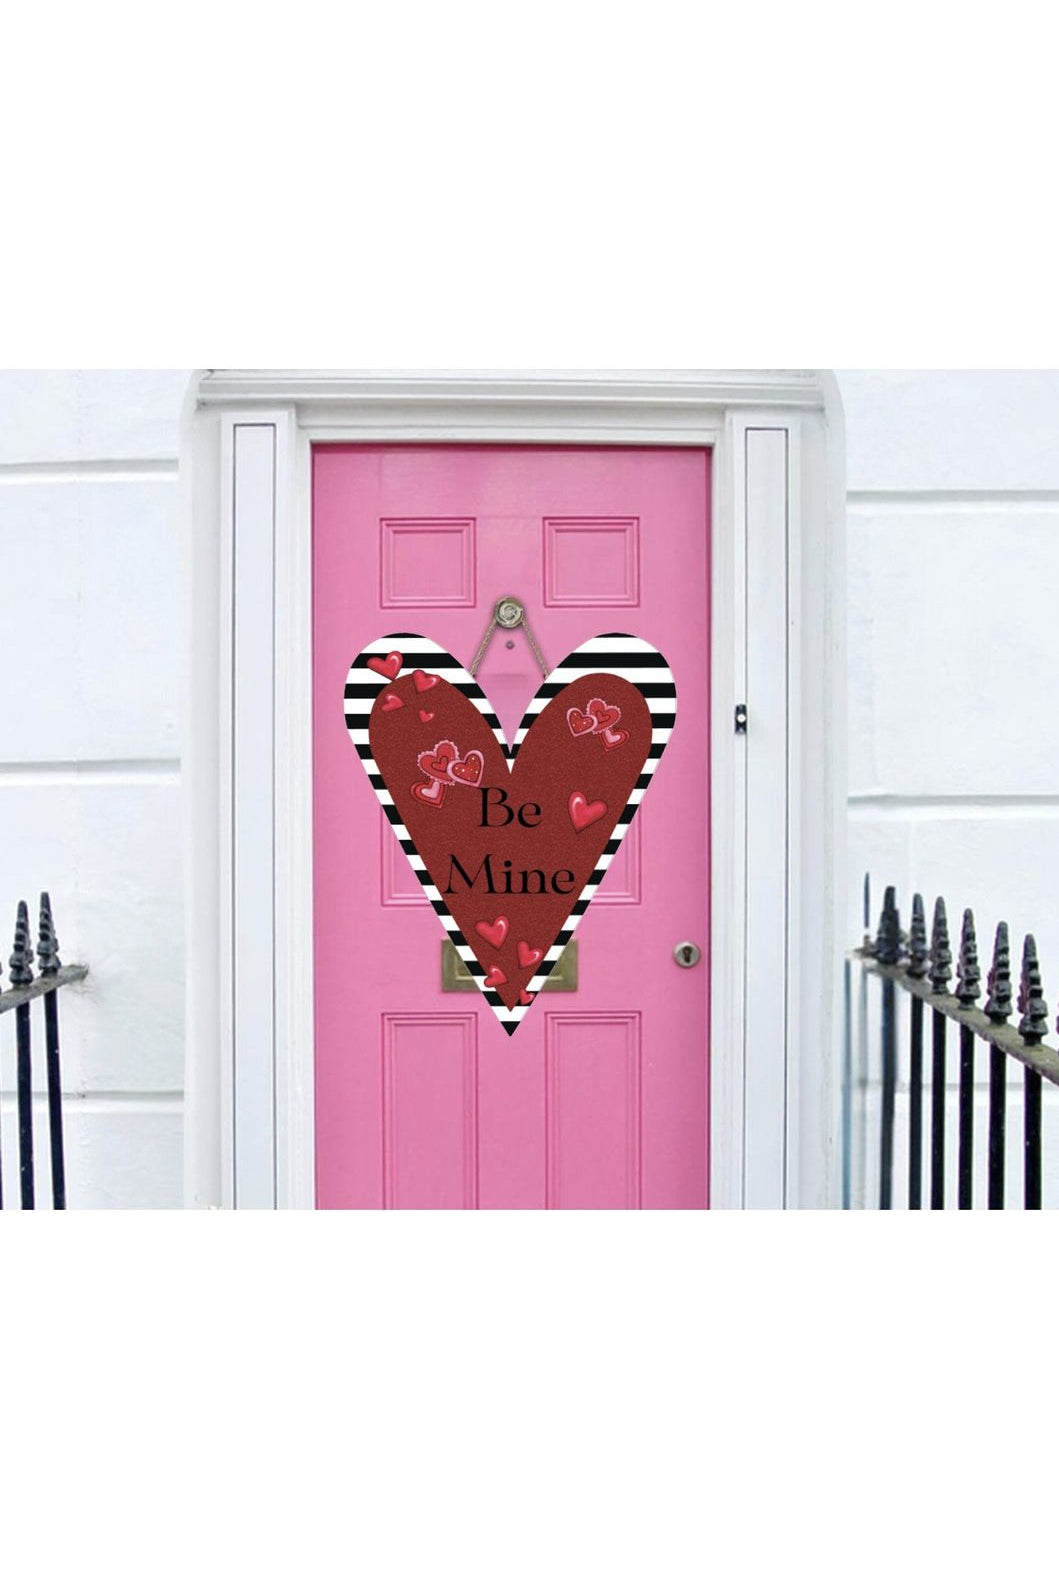 Shop For Be Mine Heart Valentine Day Door Hanger